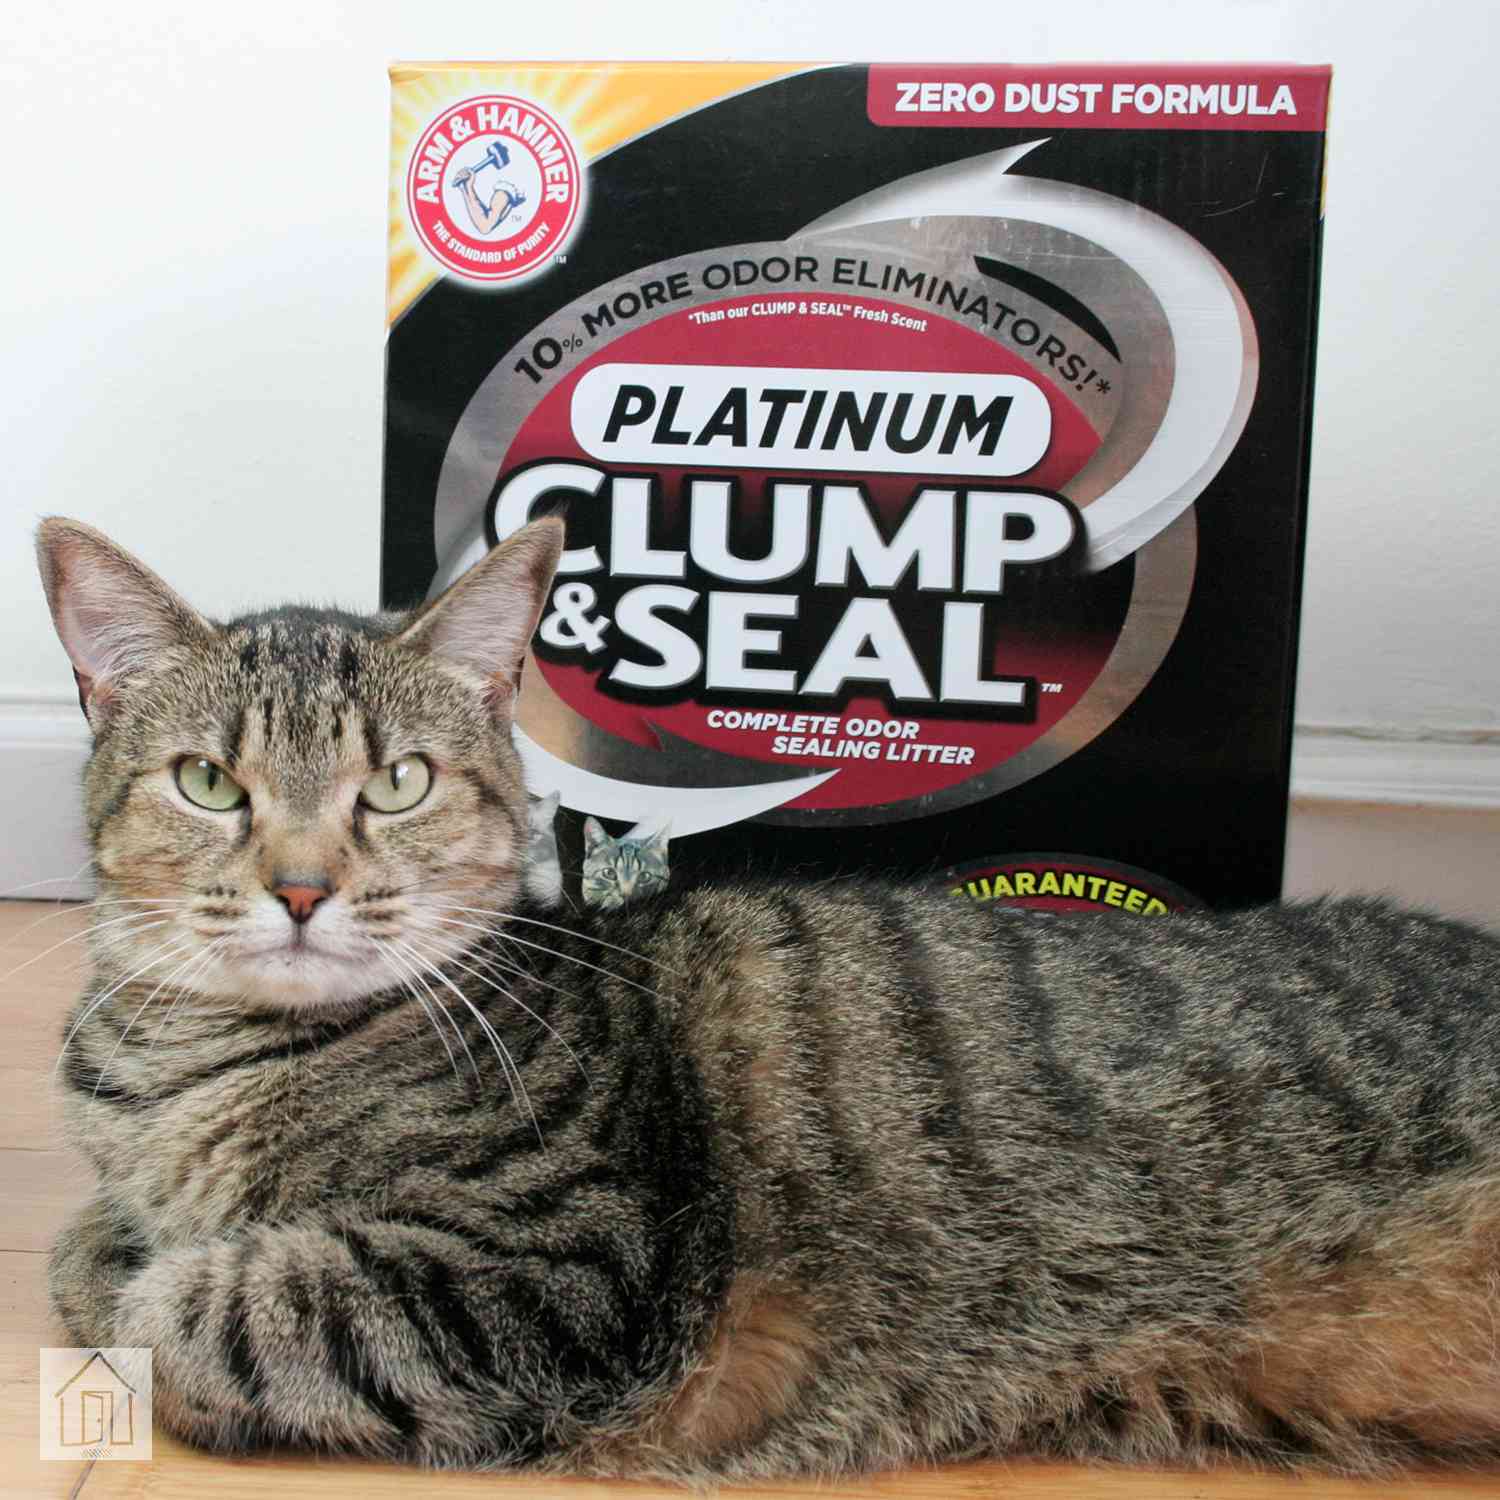 La arena para gatos Arm & Hammer Clump & Seal realmente detiene los olores